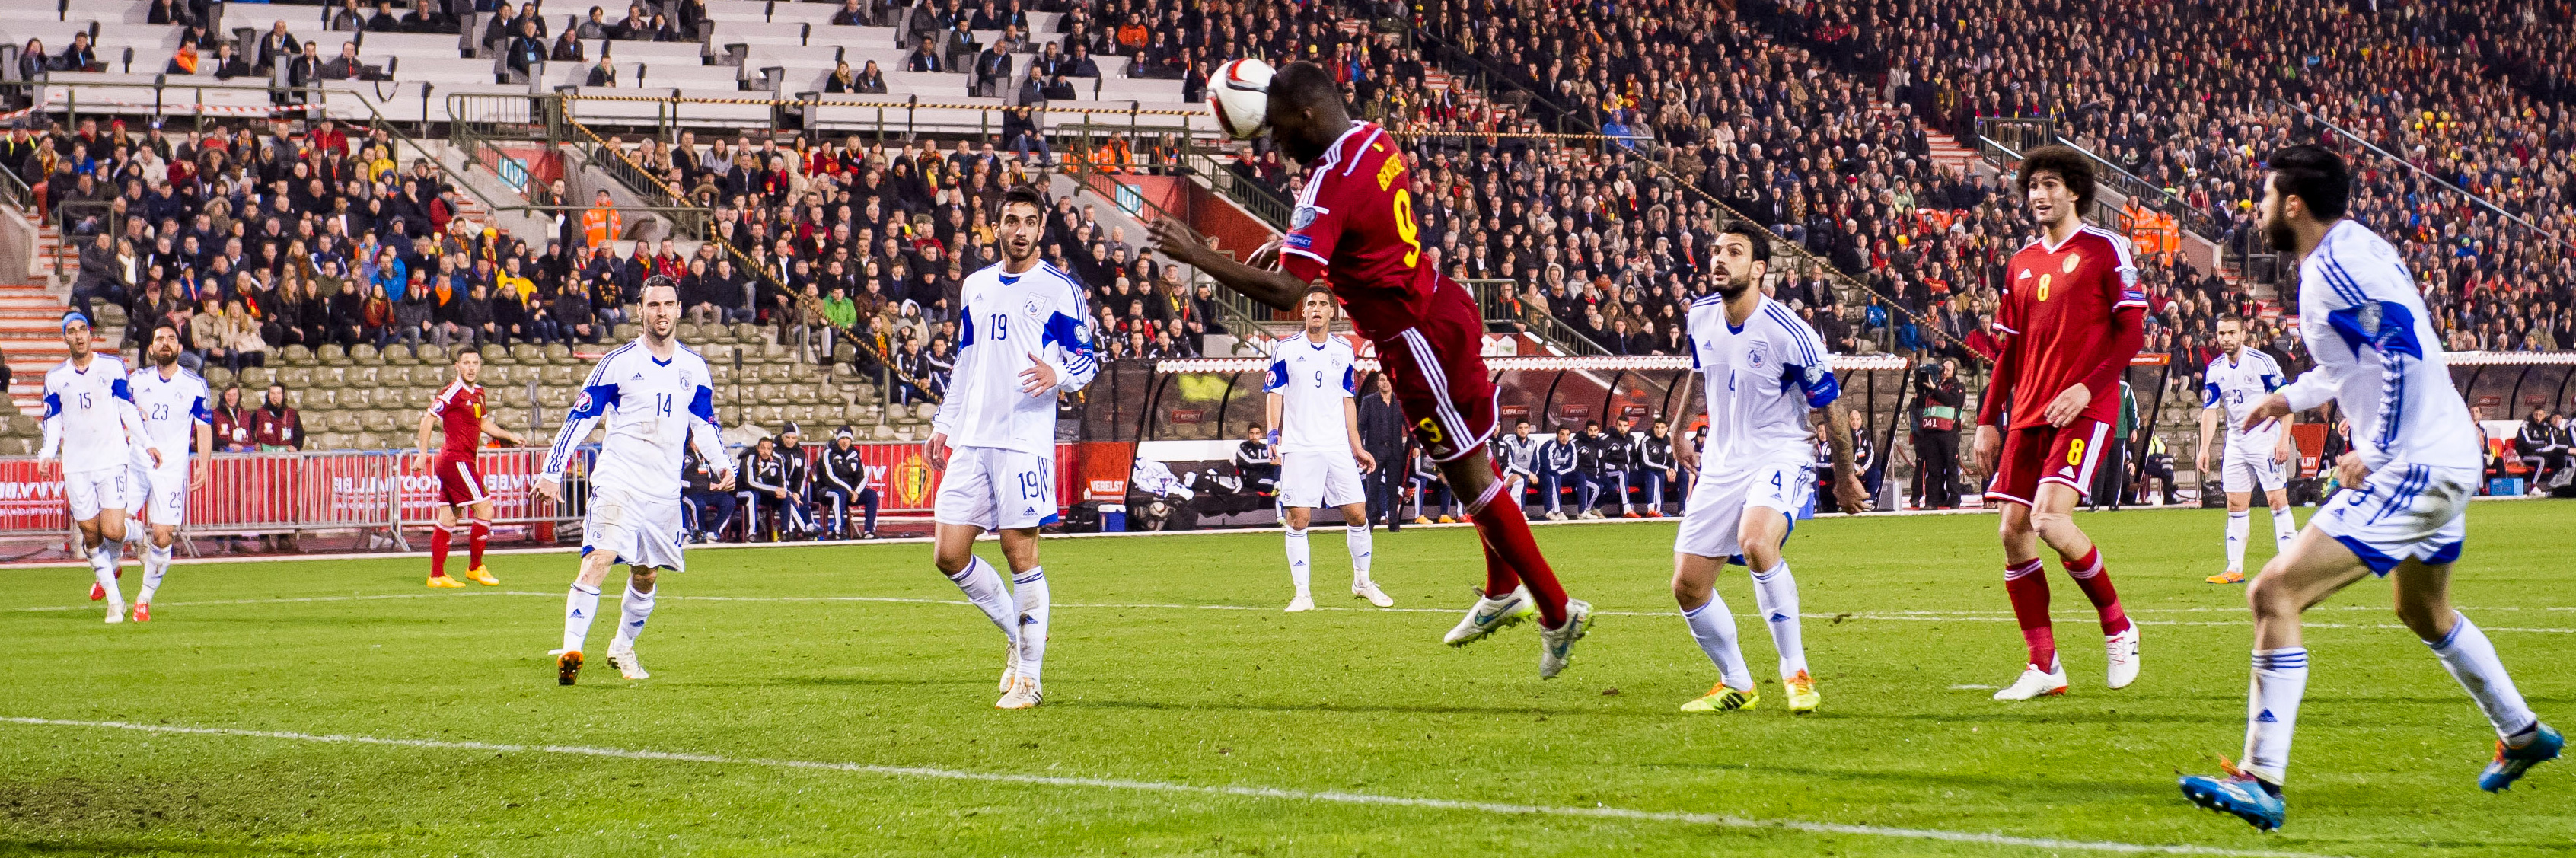 België gaat zondag op bezoek bij Cyprus. Het duel in Brussel eindigde in 5-0, mede dankzij een goal van Christian Benteke.